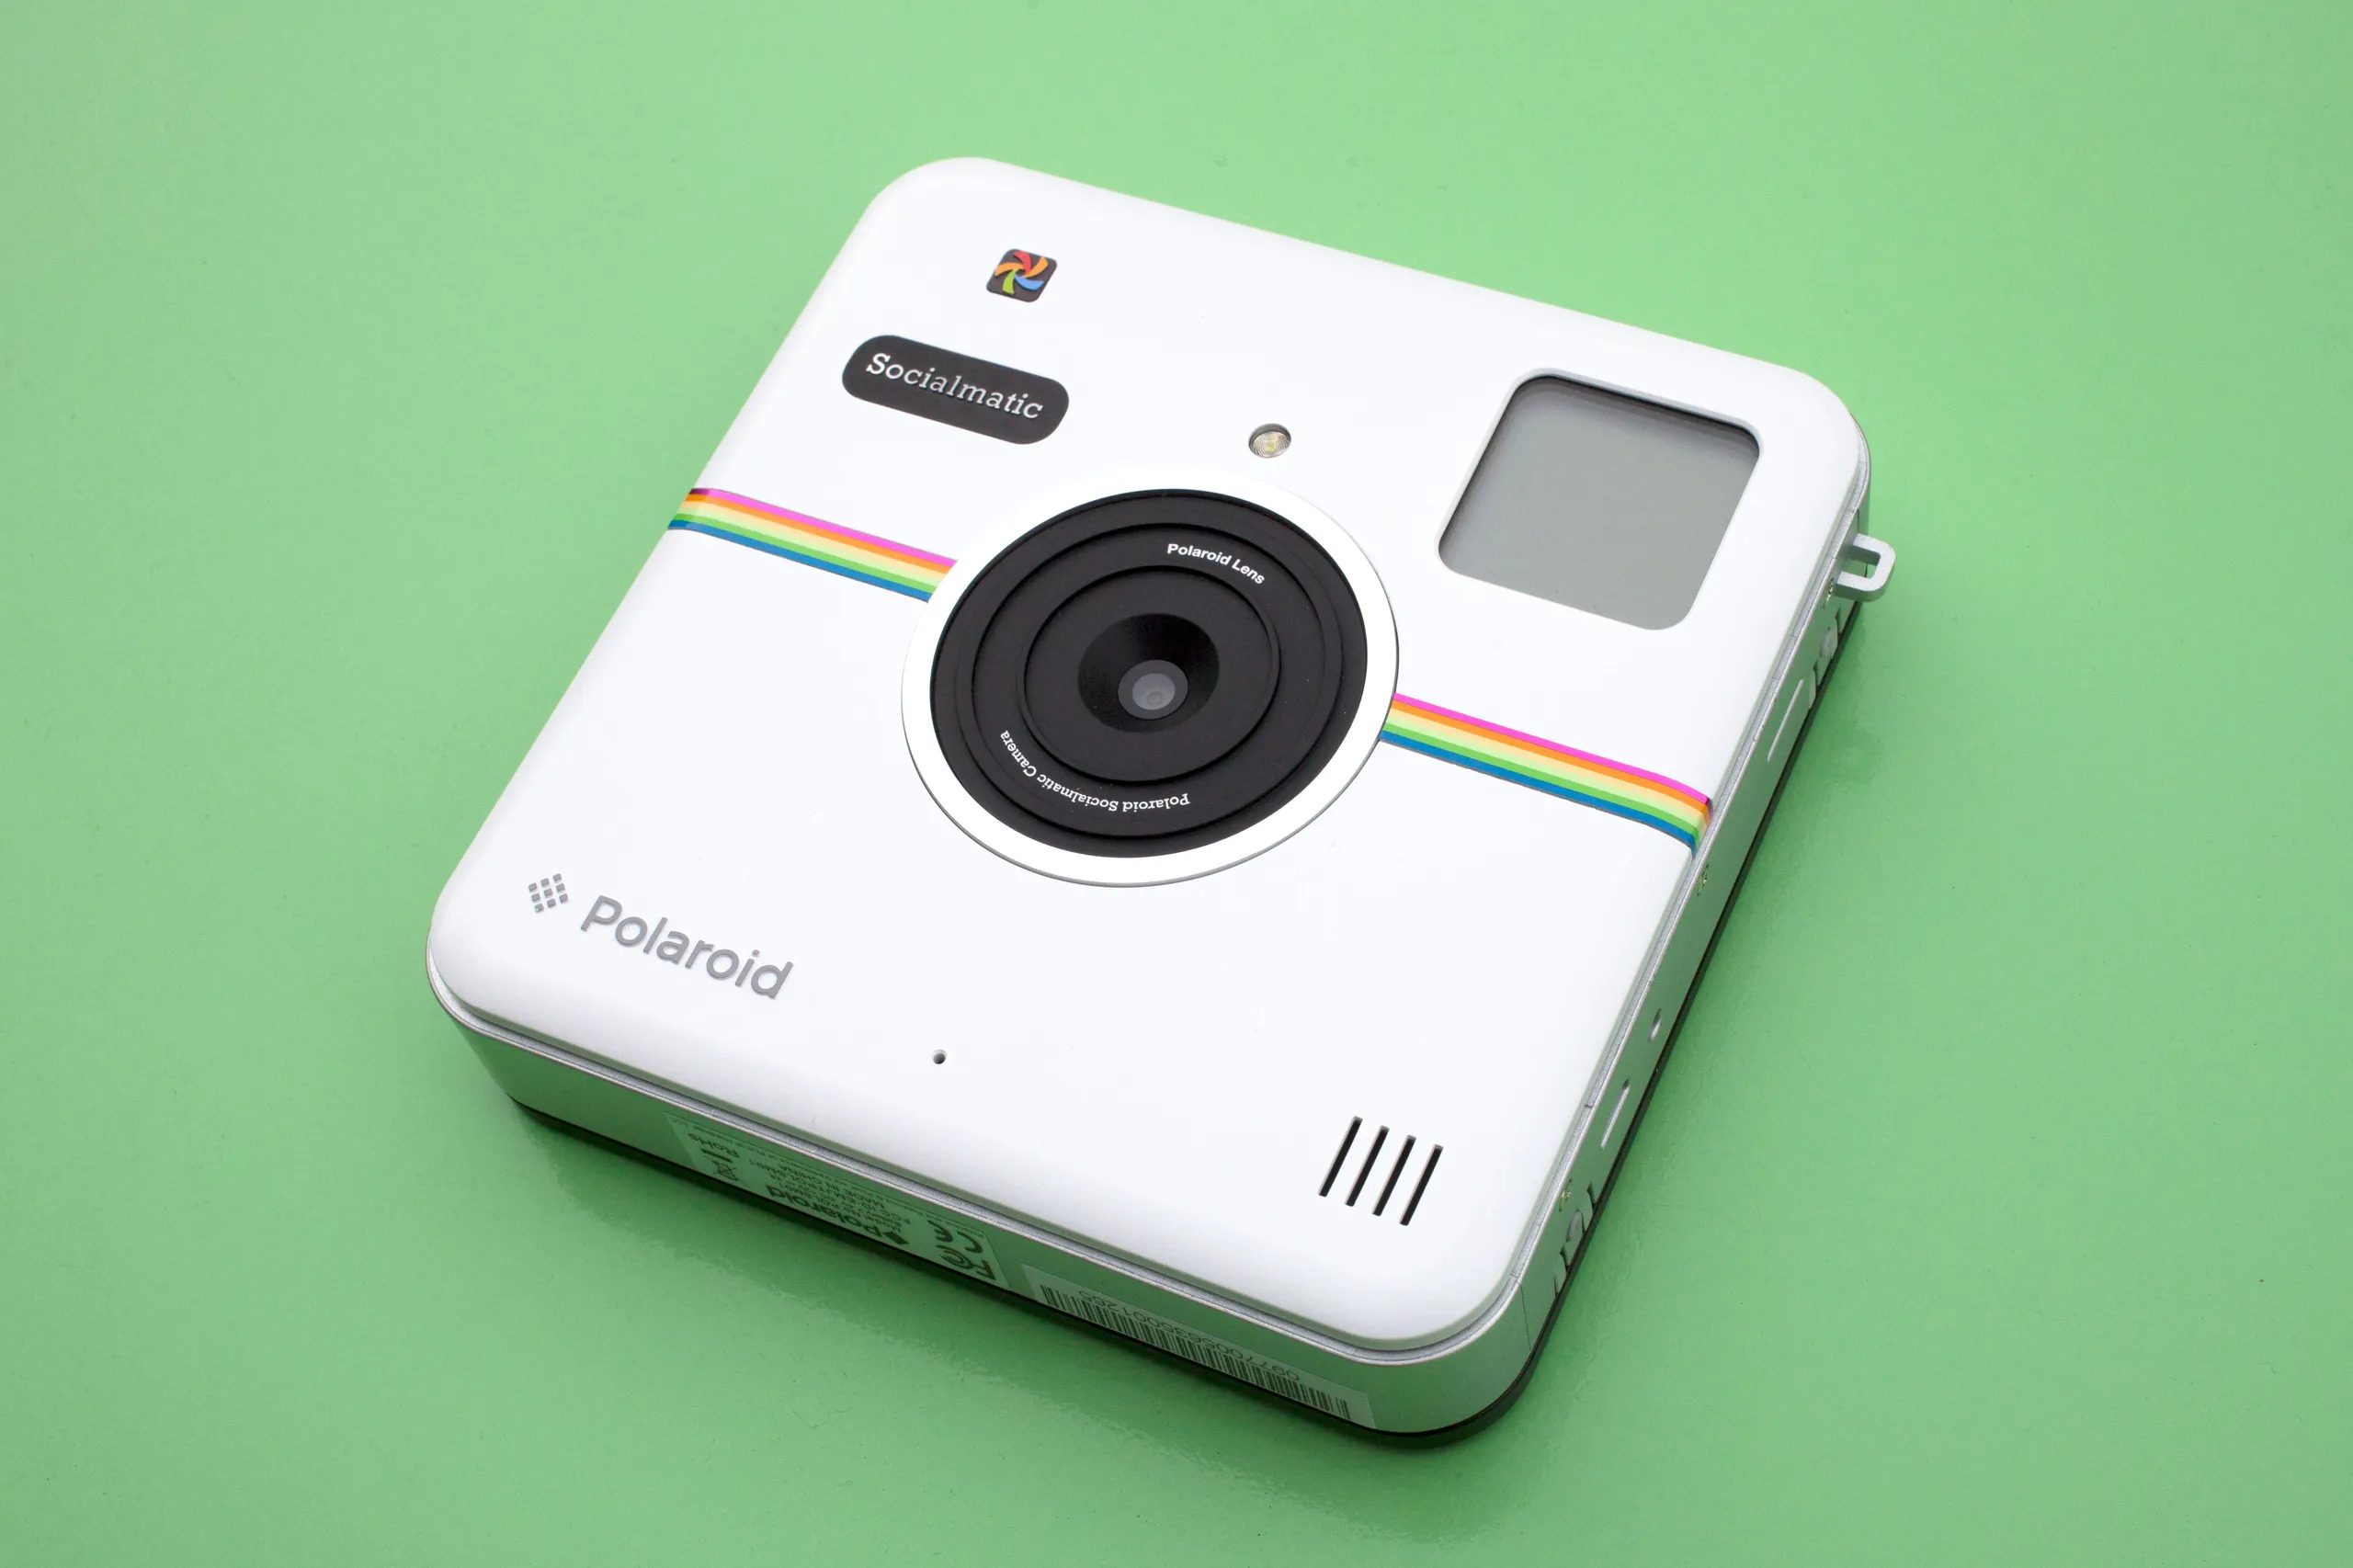 Condividi le tue storie Instagram con stile